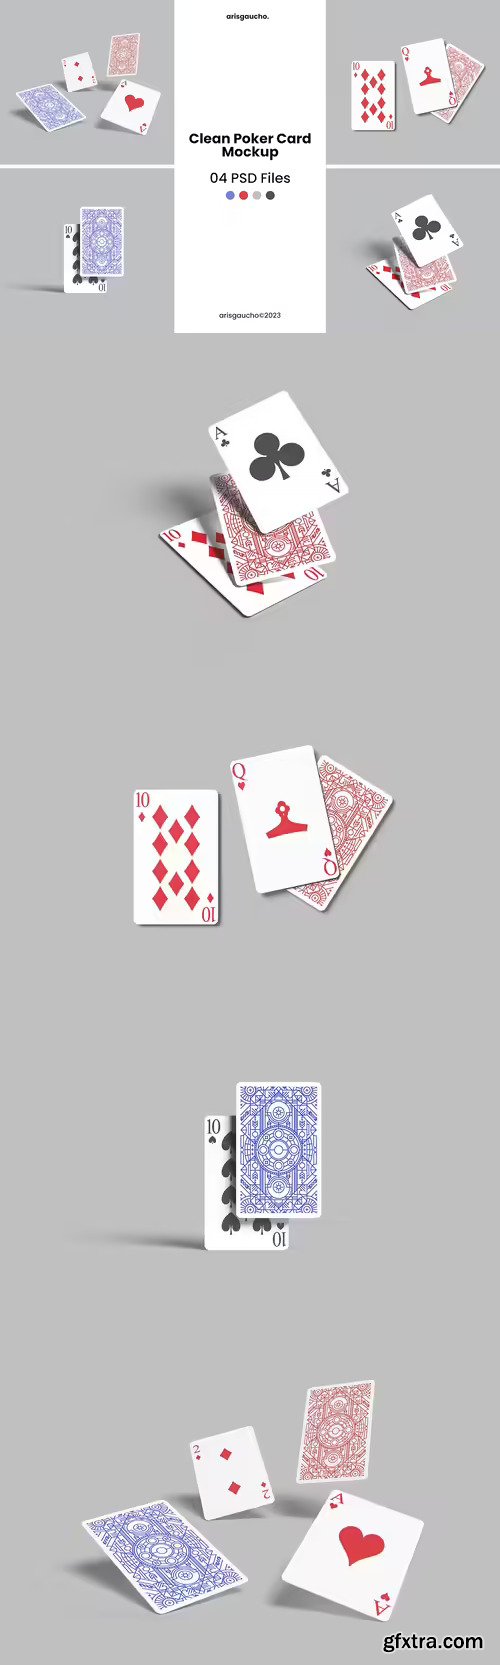 Clean Poker Card Mockup